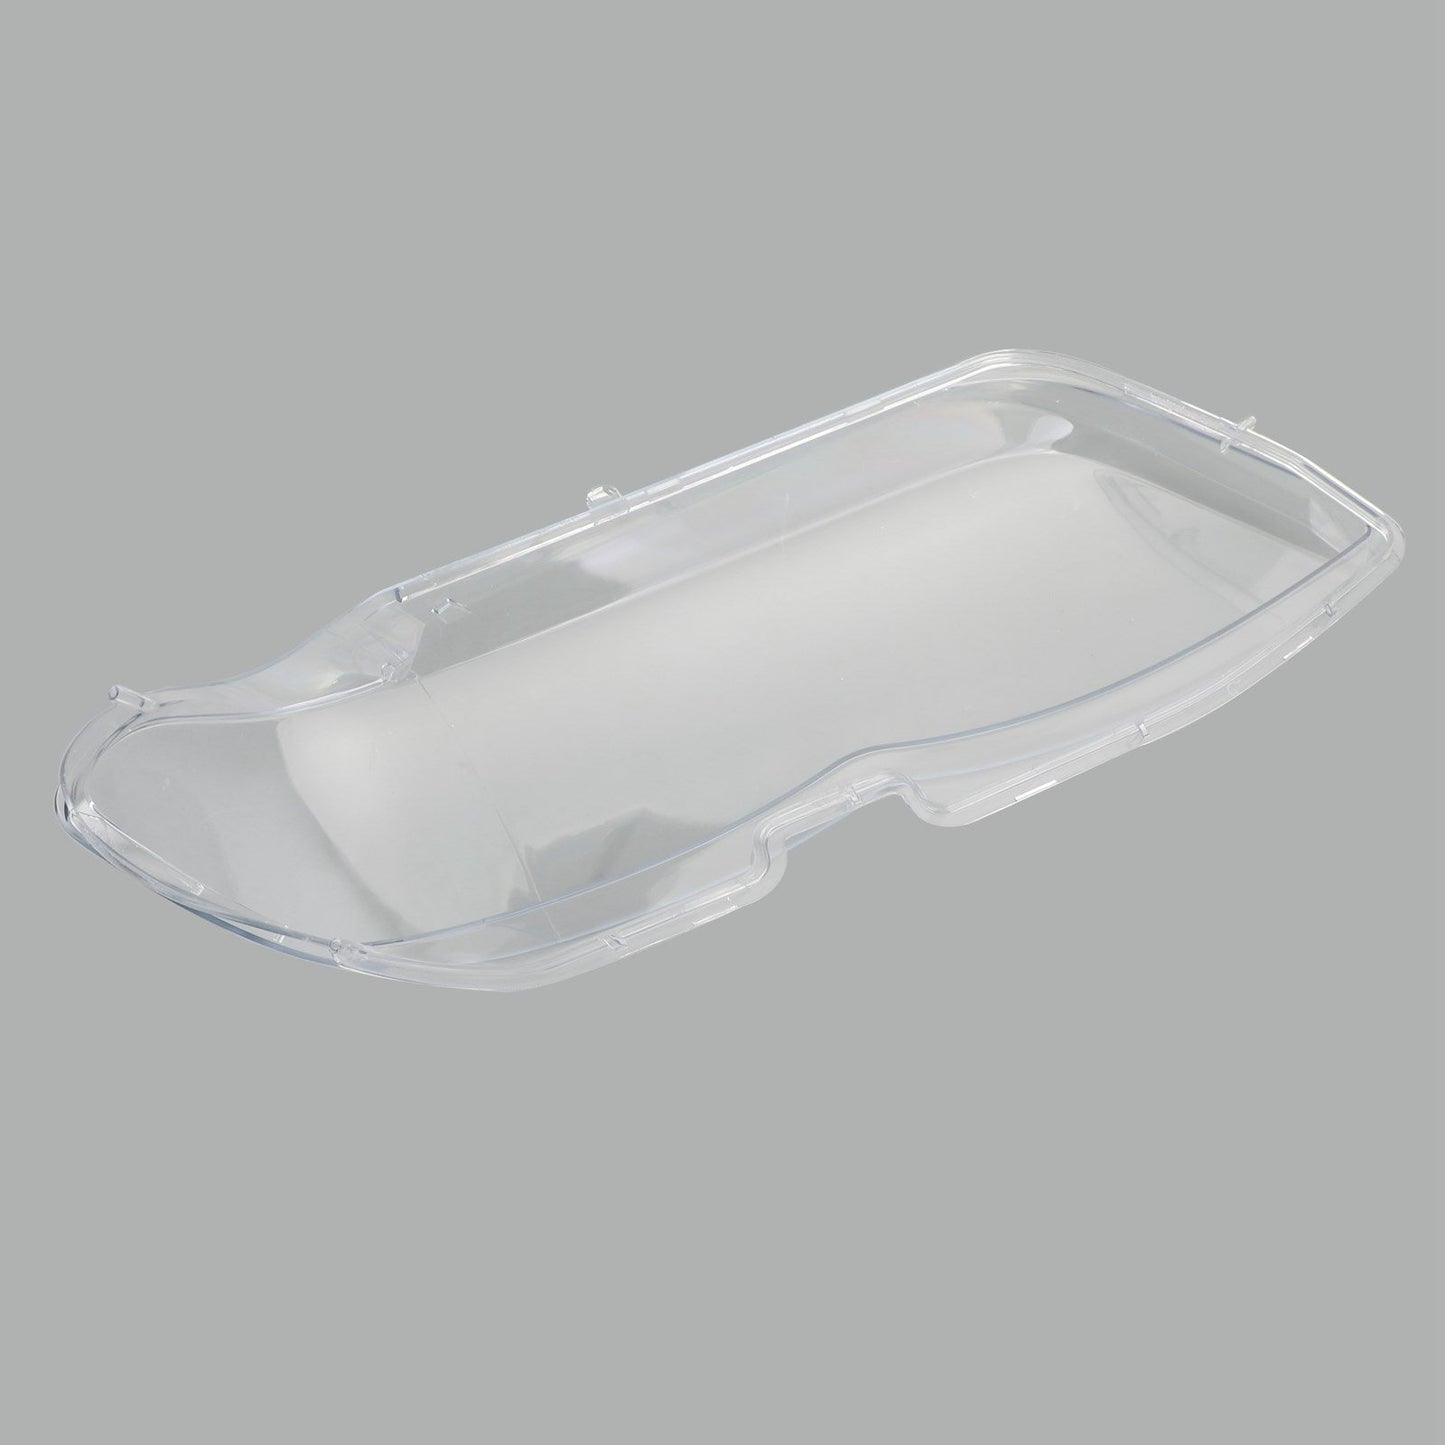 Left Headlight Shell Headlight Lens Plastic Cover For BMW X5 E53 2004-2006